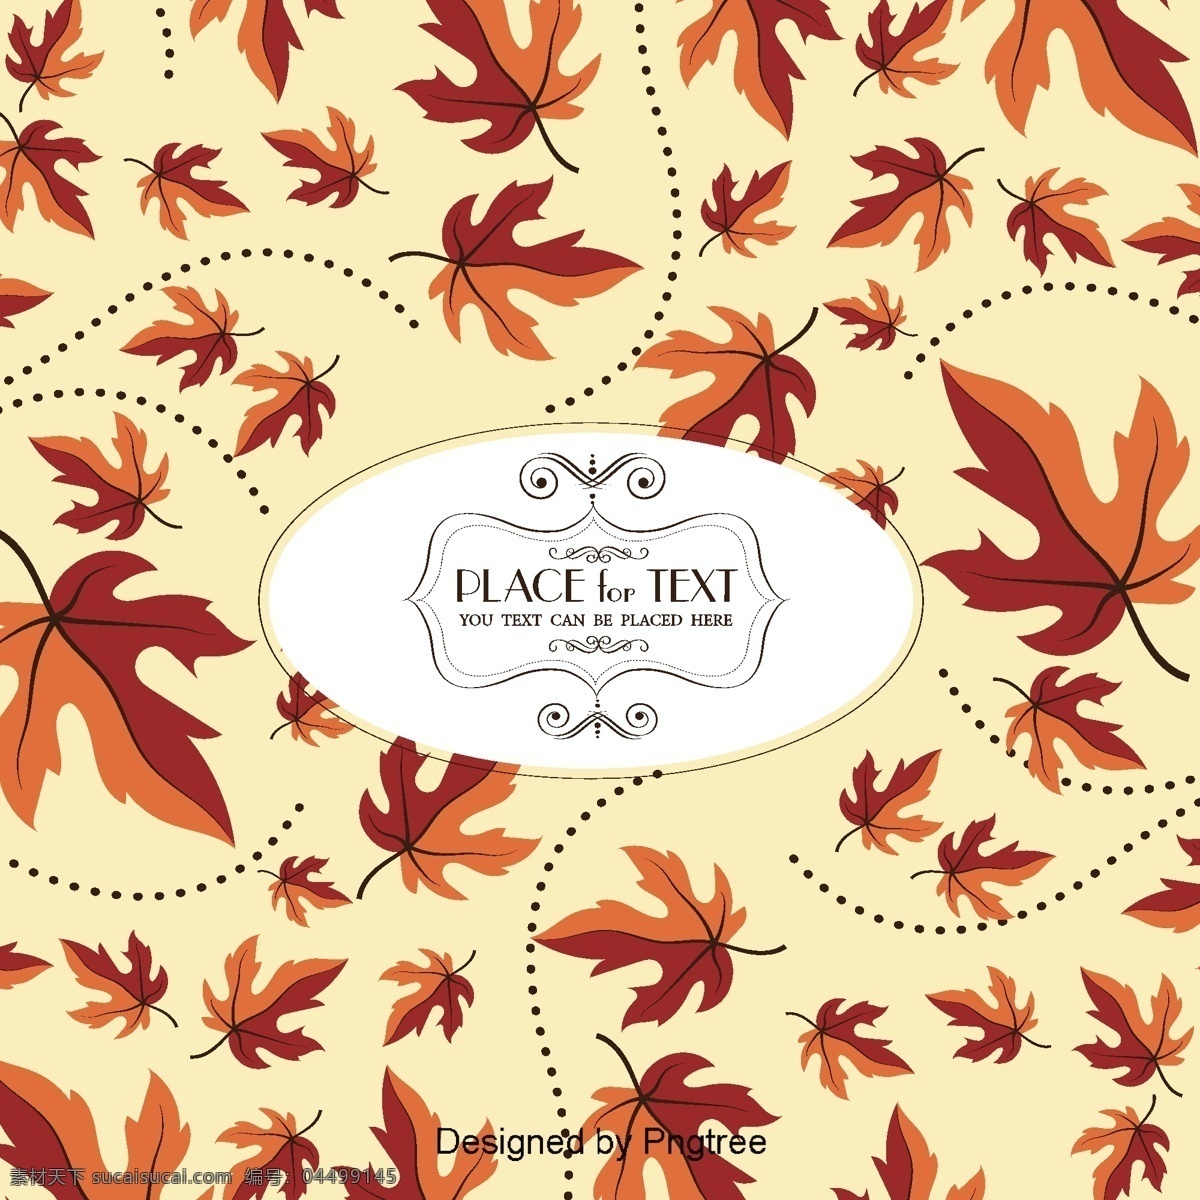 美丽 卡通 可爱 平展 手绘 秋叶 壁纸 背景 创意 平面 秋季 树叶 黄叶 条纹